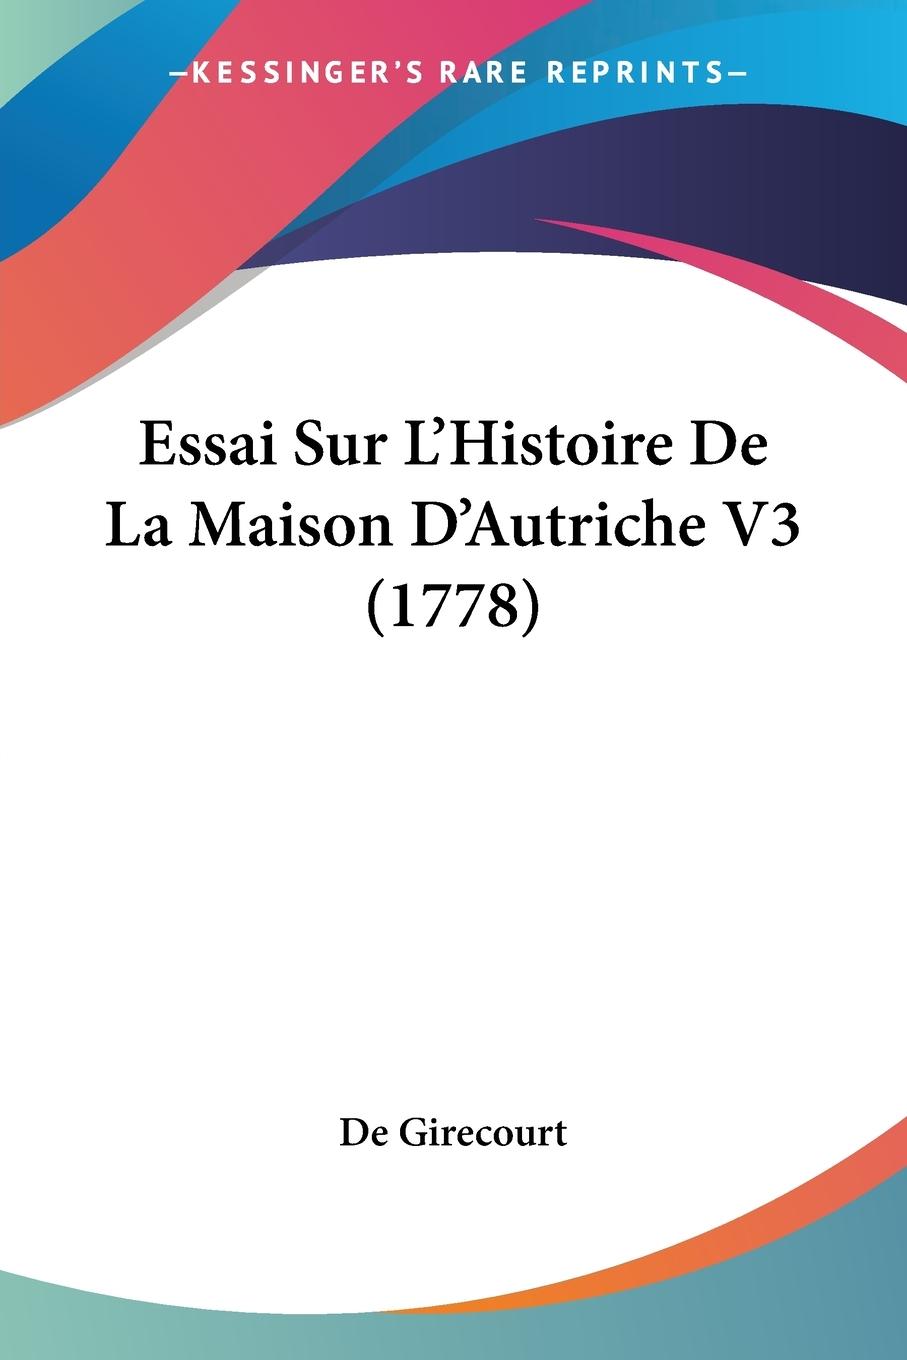 Essai Sur L Histoire De La Maison D Autriche V3 (1778) - De Girecourt